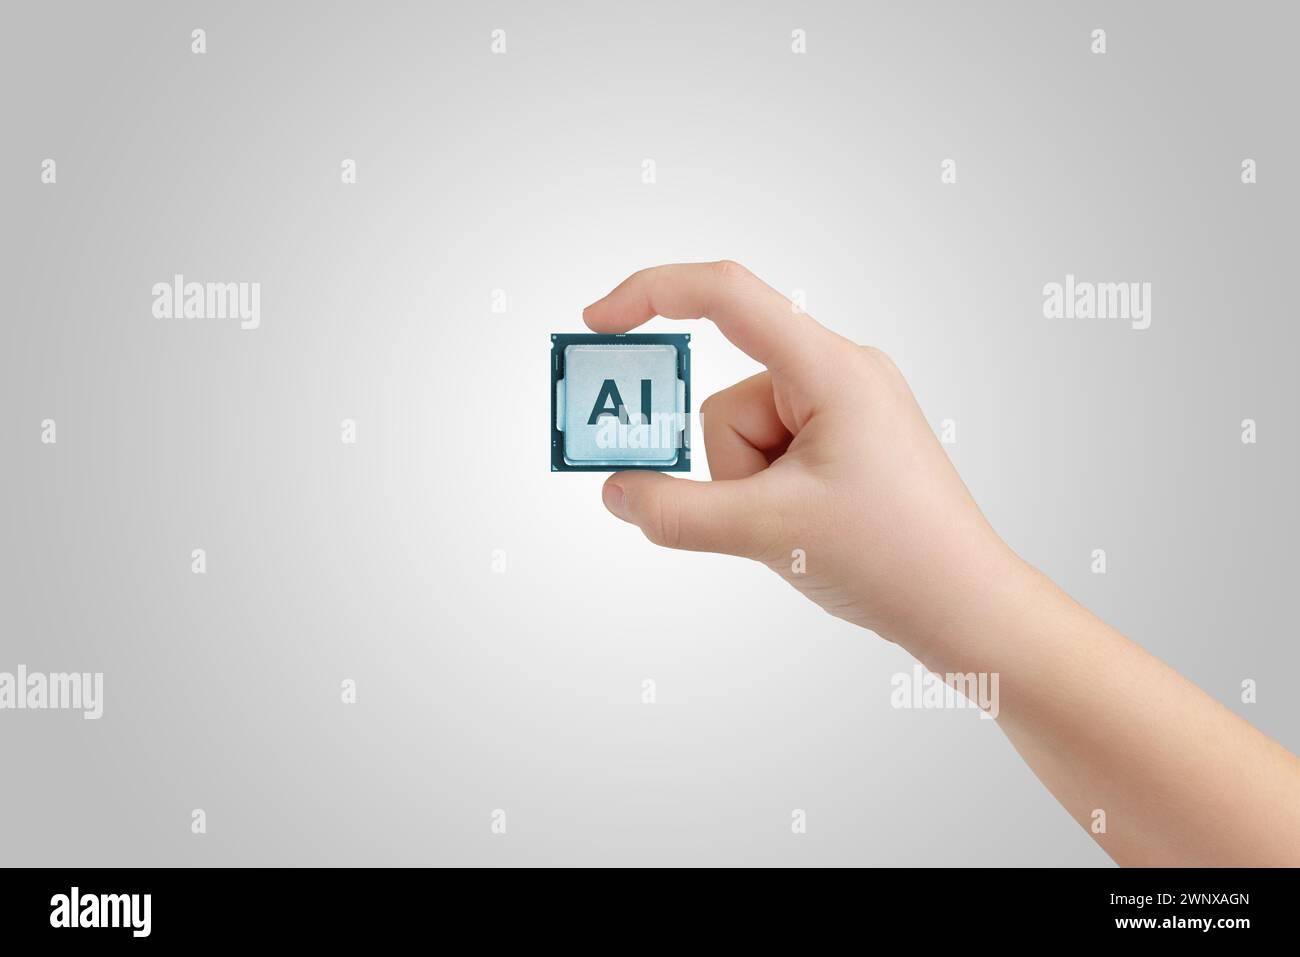 Main tenant une puce ai. Symbolisant les avancées dans la technologie IA et le développement de l’apprentissage automatique Banque D'Images